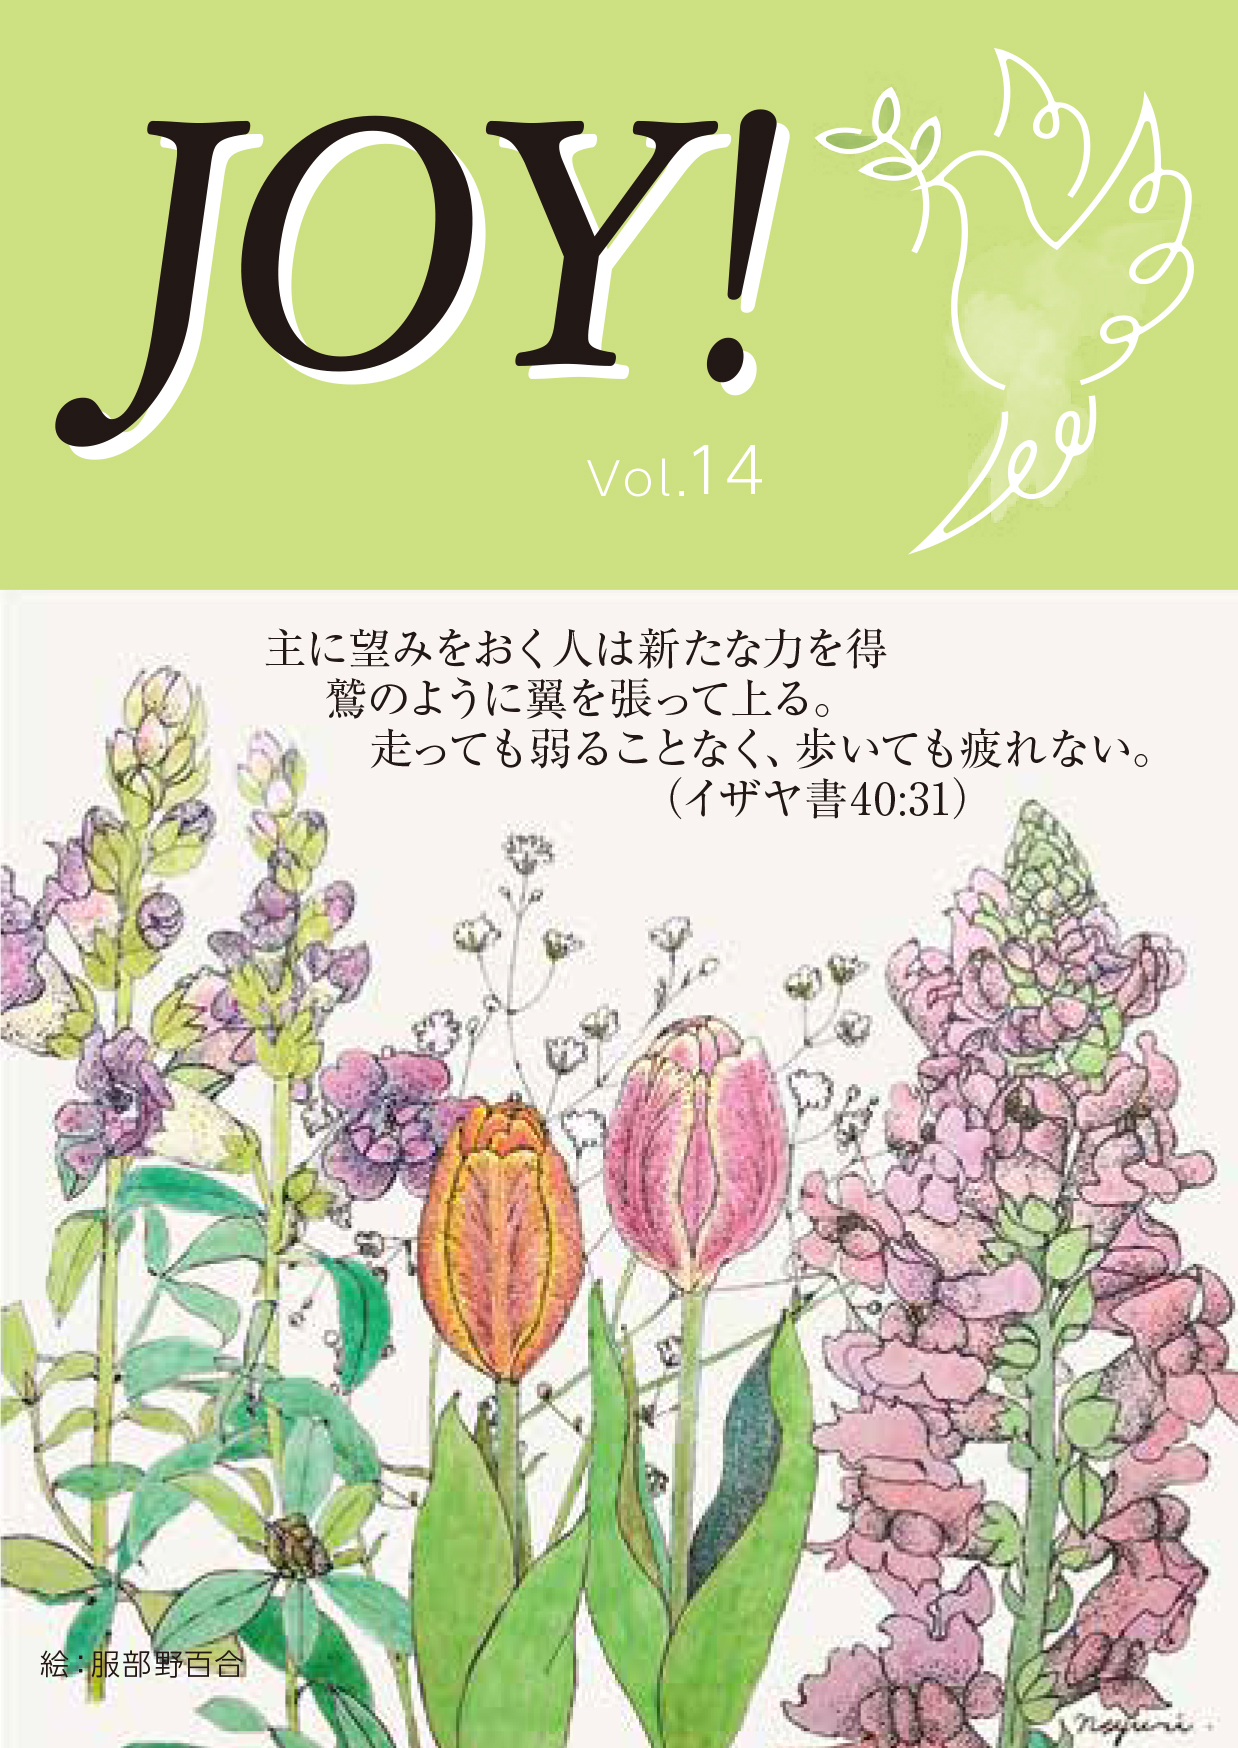 季刊紙 『JOY!』春号配布中(Vol.14)